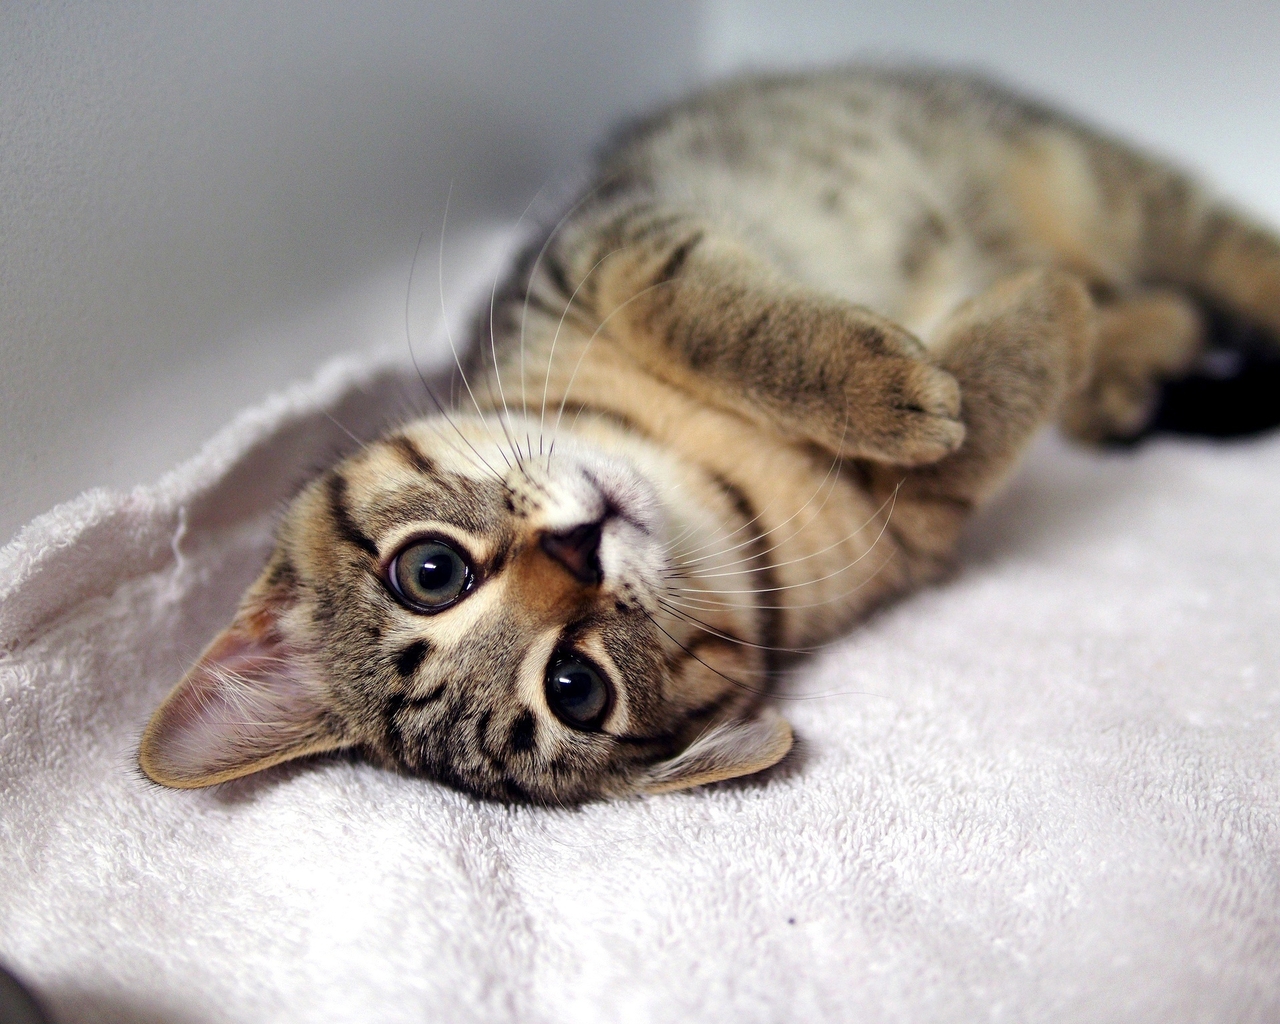 Image: Kitten, striped, cat, lying, legs, eyes, snout, mustache